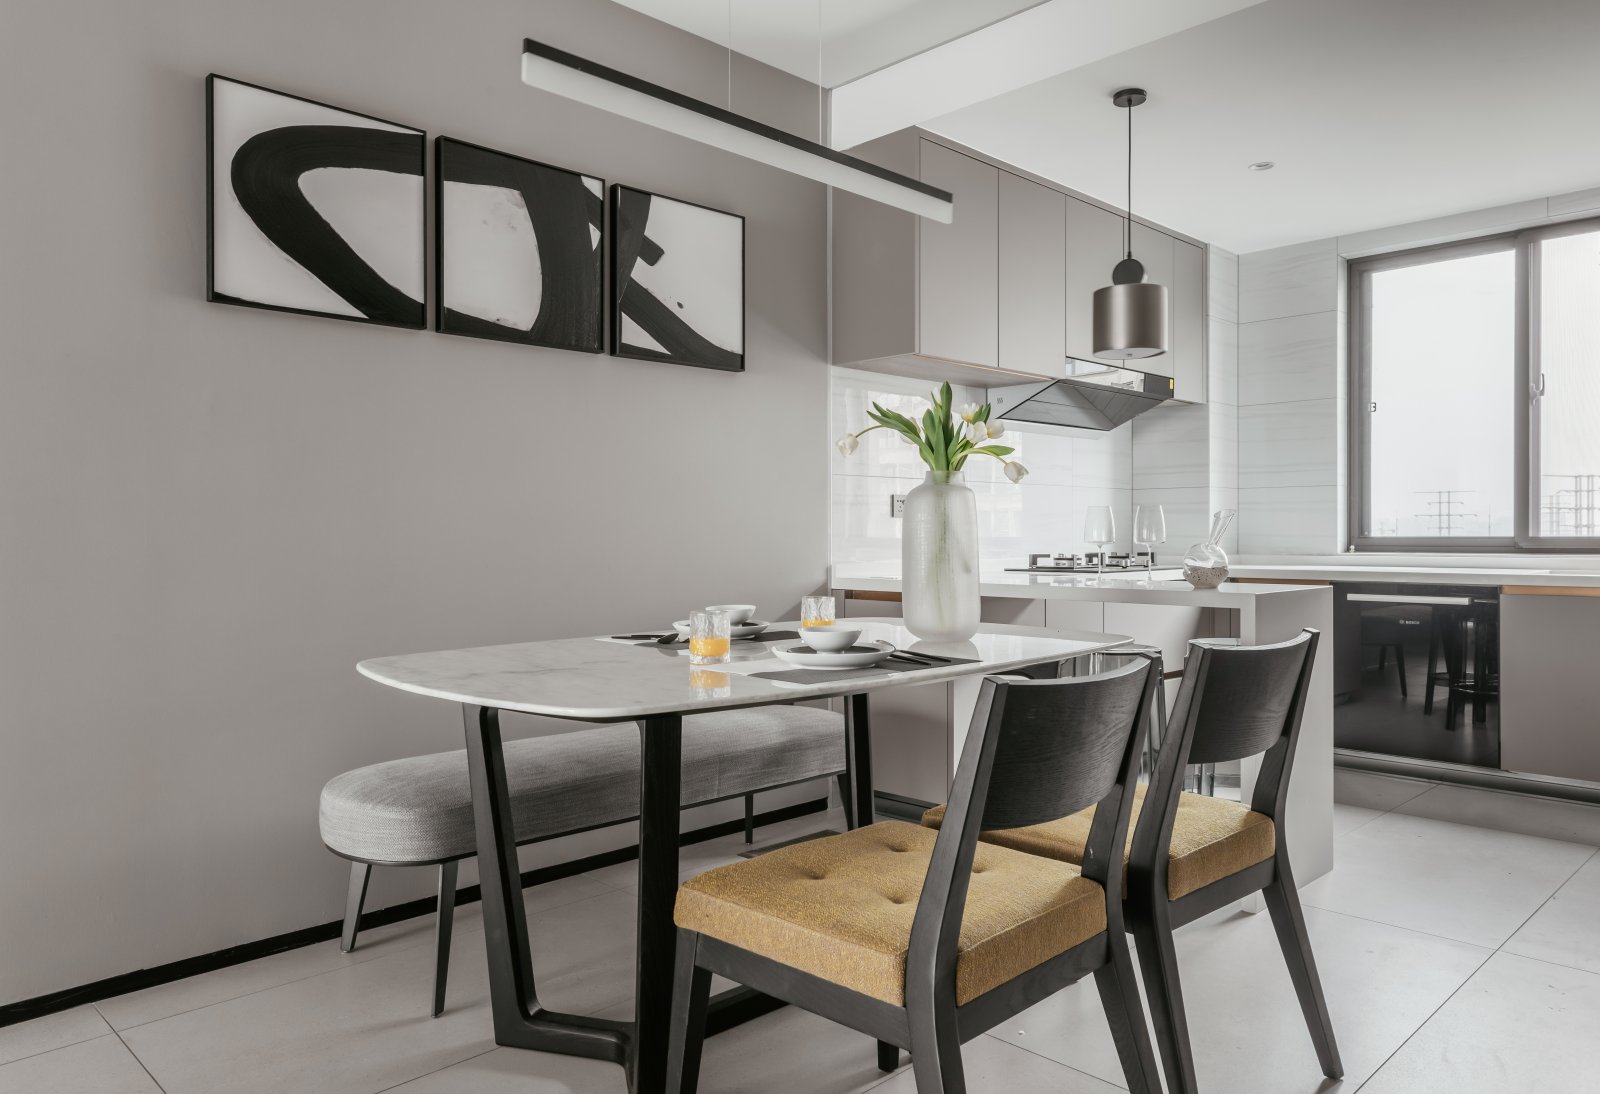 厨房与餐厅融为一体，灰色背景墙与米色橱柜相得益彰，营造出高级朴素的设计氛围。